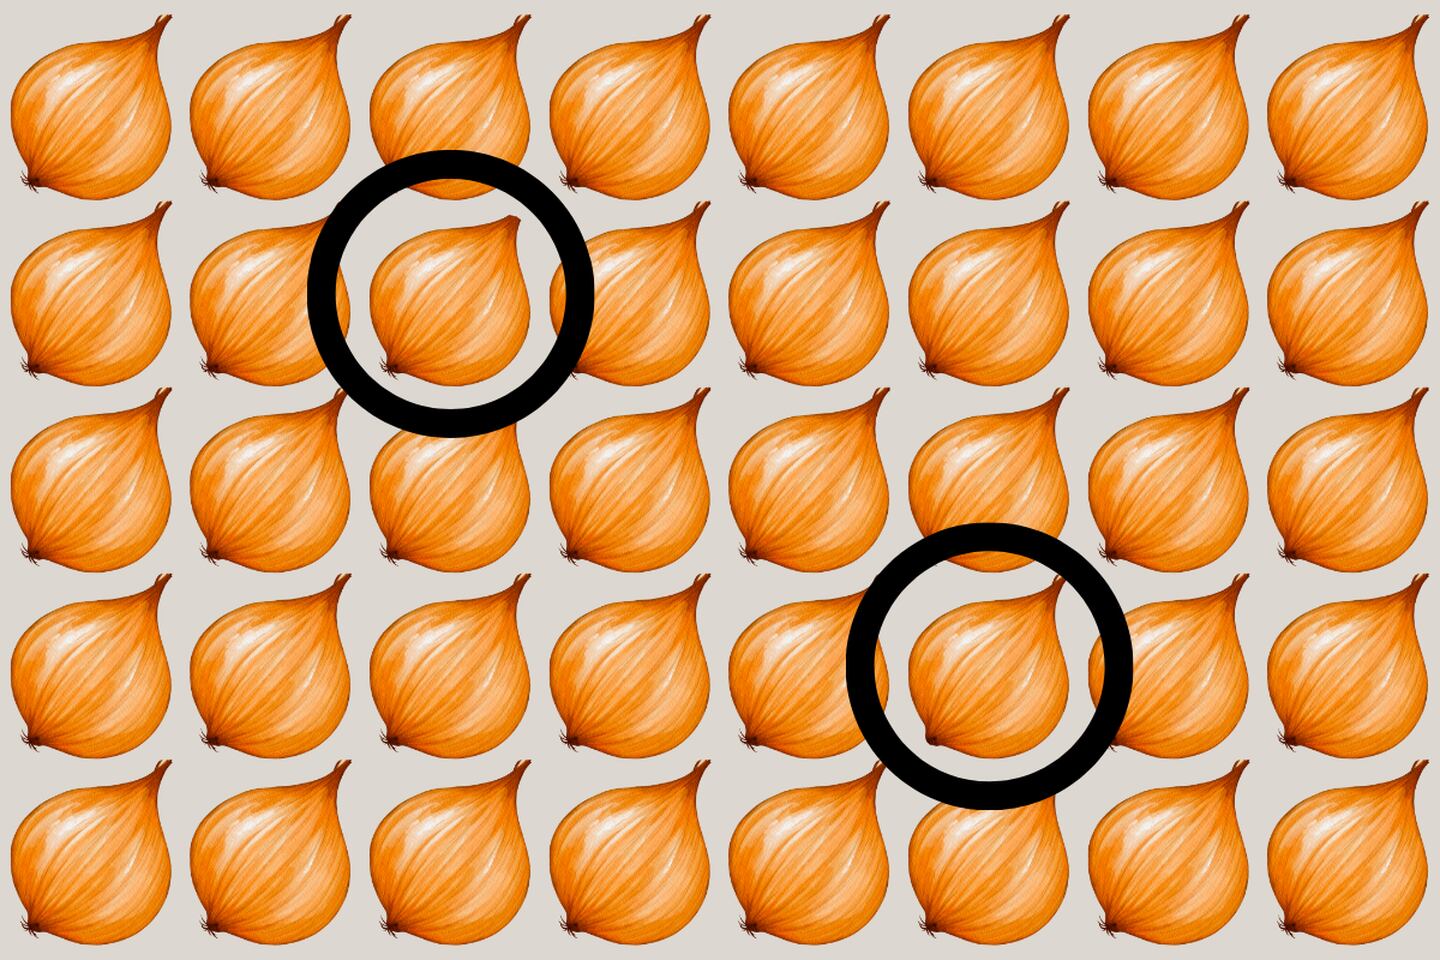 En este test visual hay muchas cebollas que parecen iguales, pero dos de ellas son diferentes.